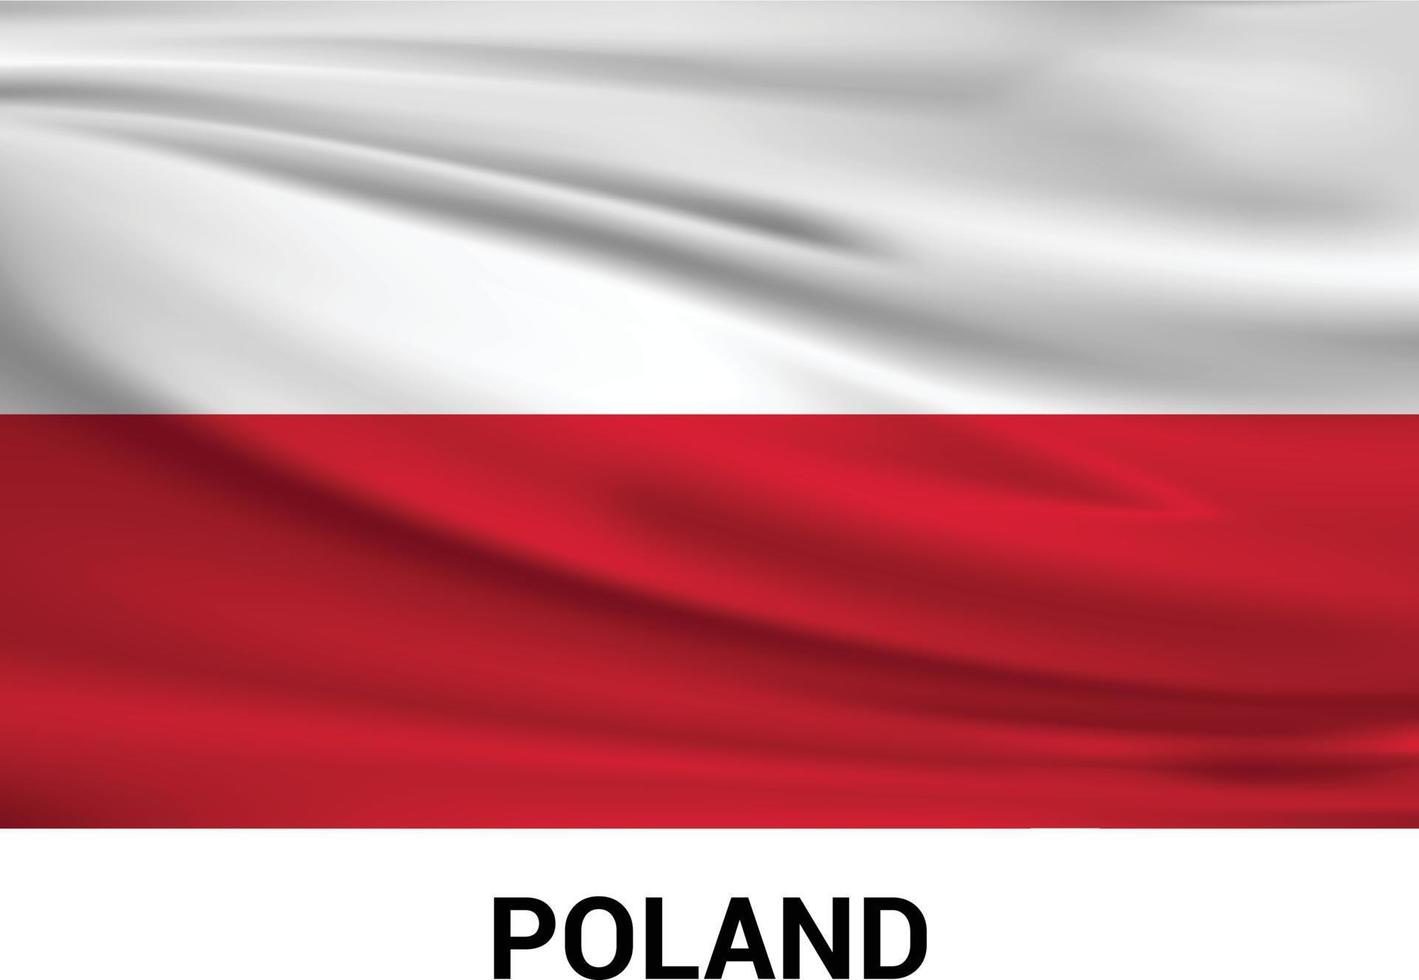 Poland flags design vector